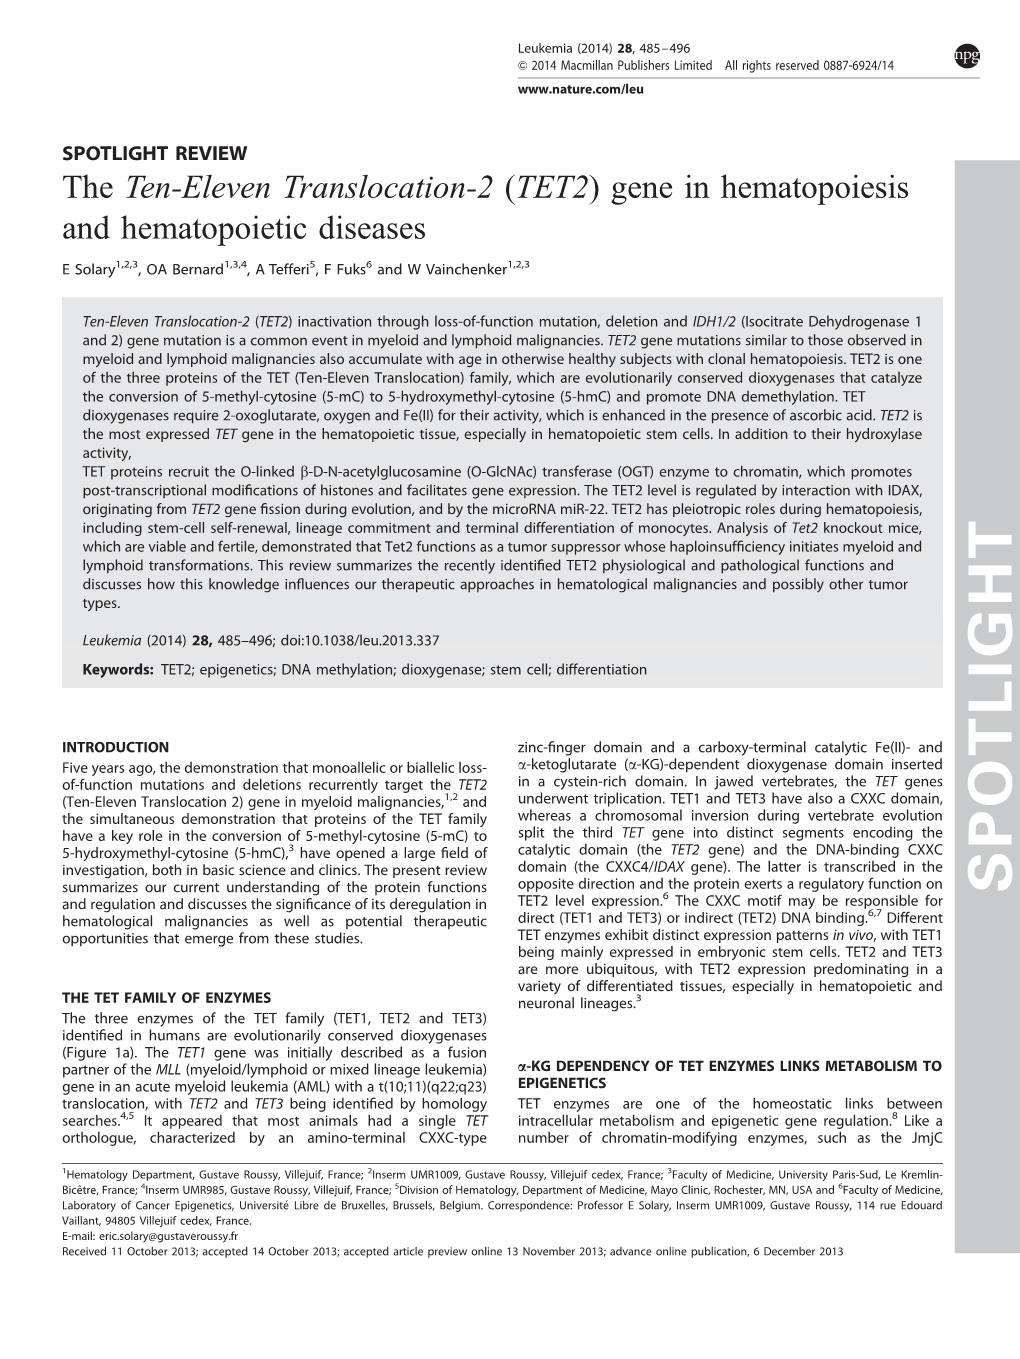 The Ten-Eleven Translocation-2 (TET2) Gene in Hematopoiesis and Hematopoietic Diseases